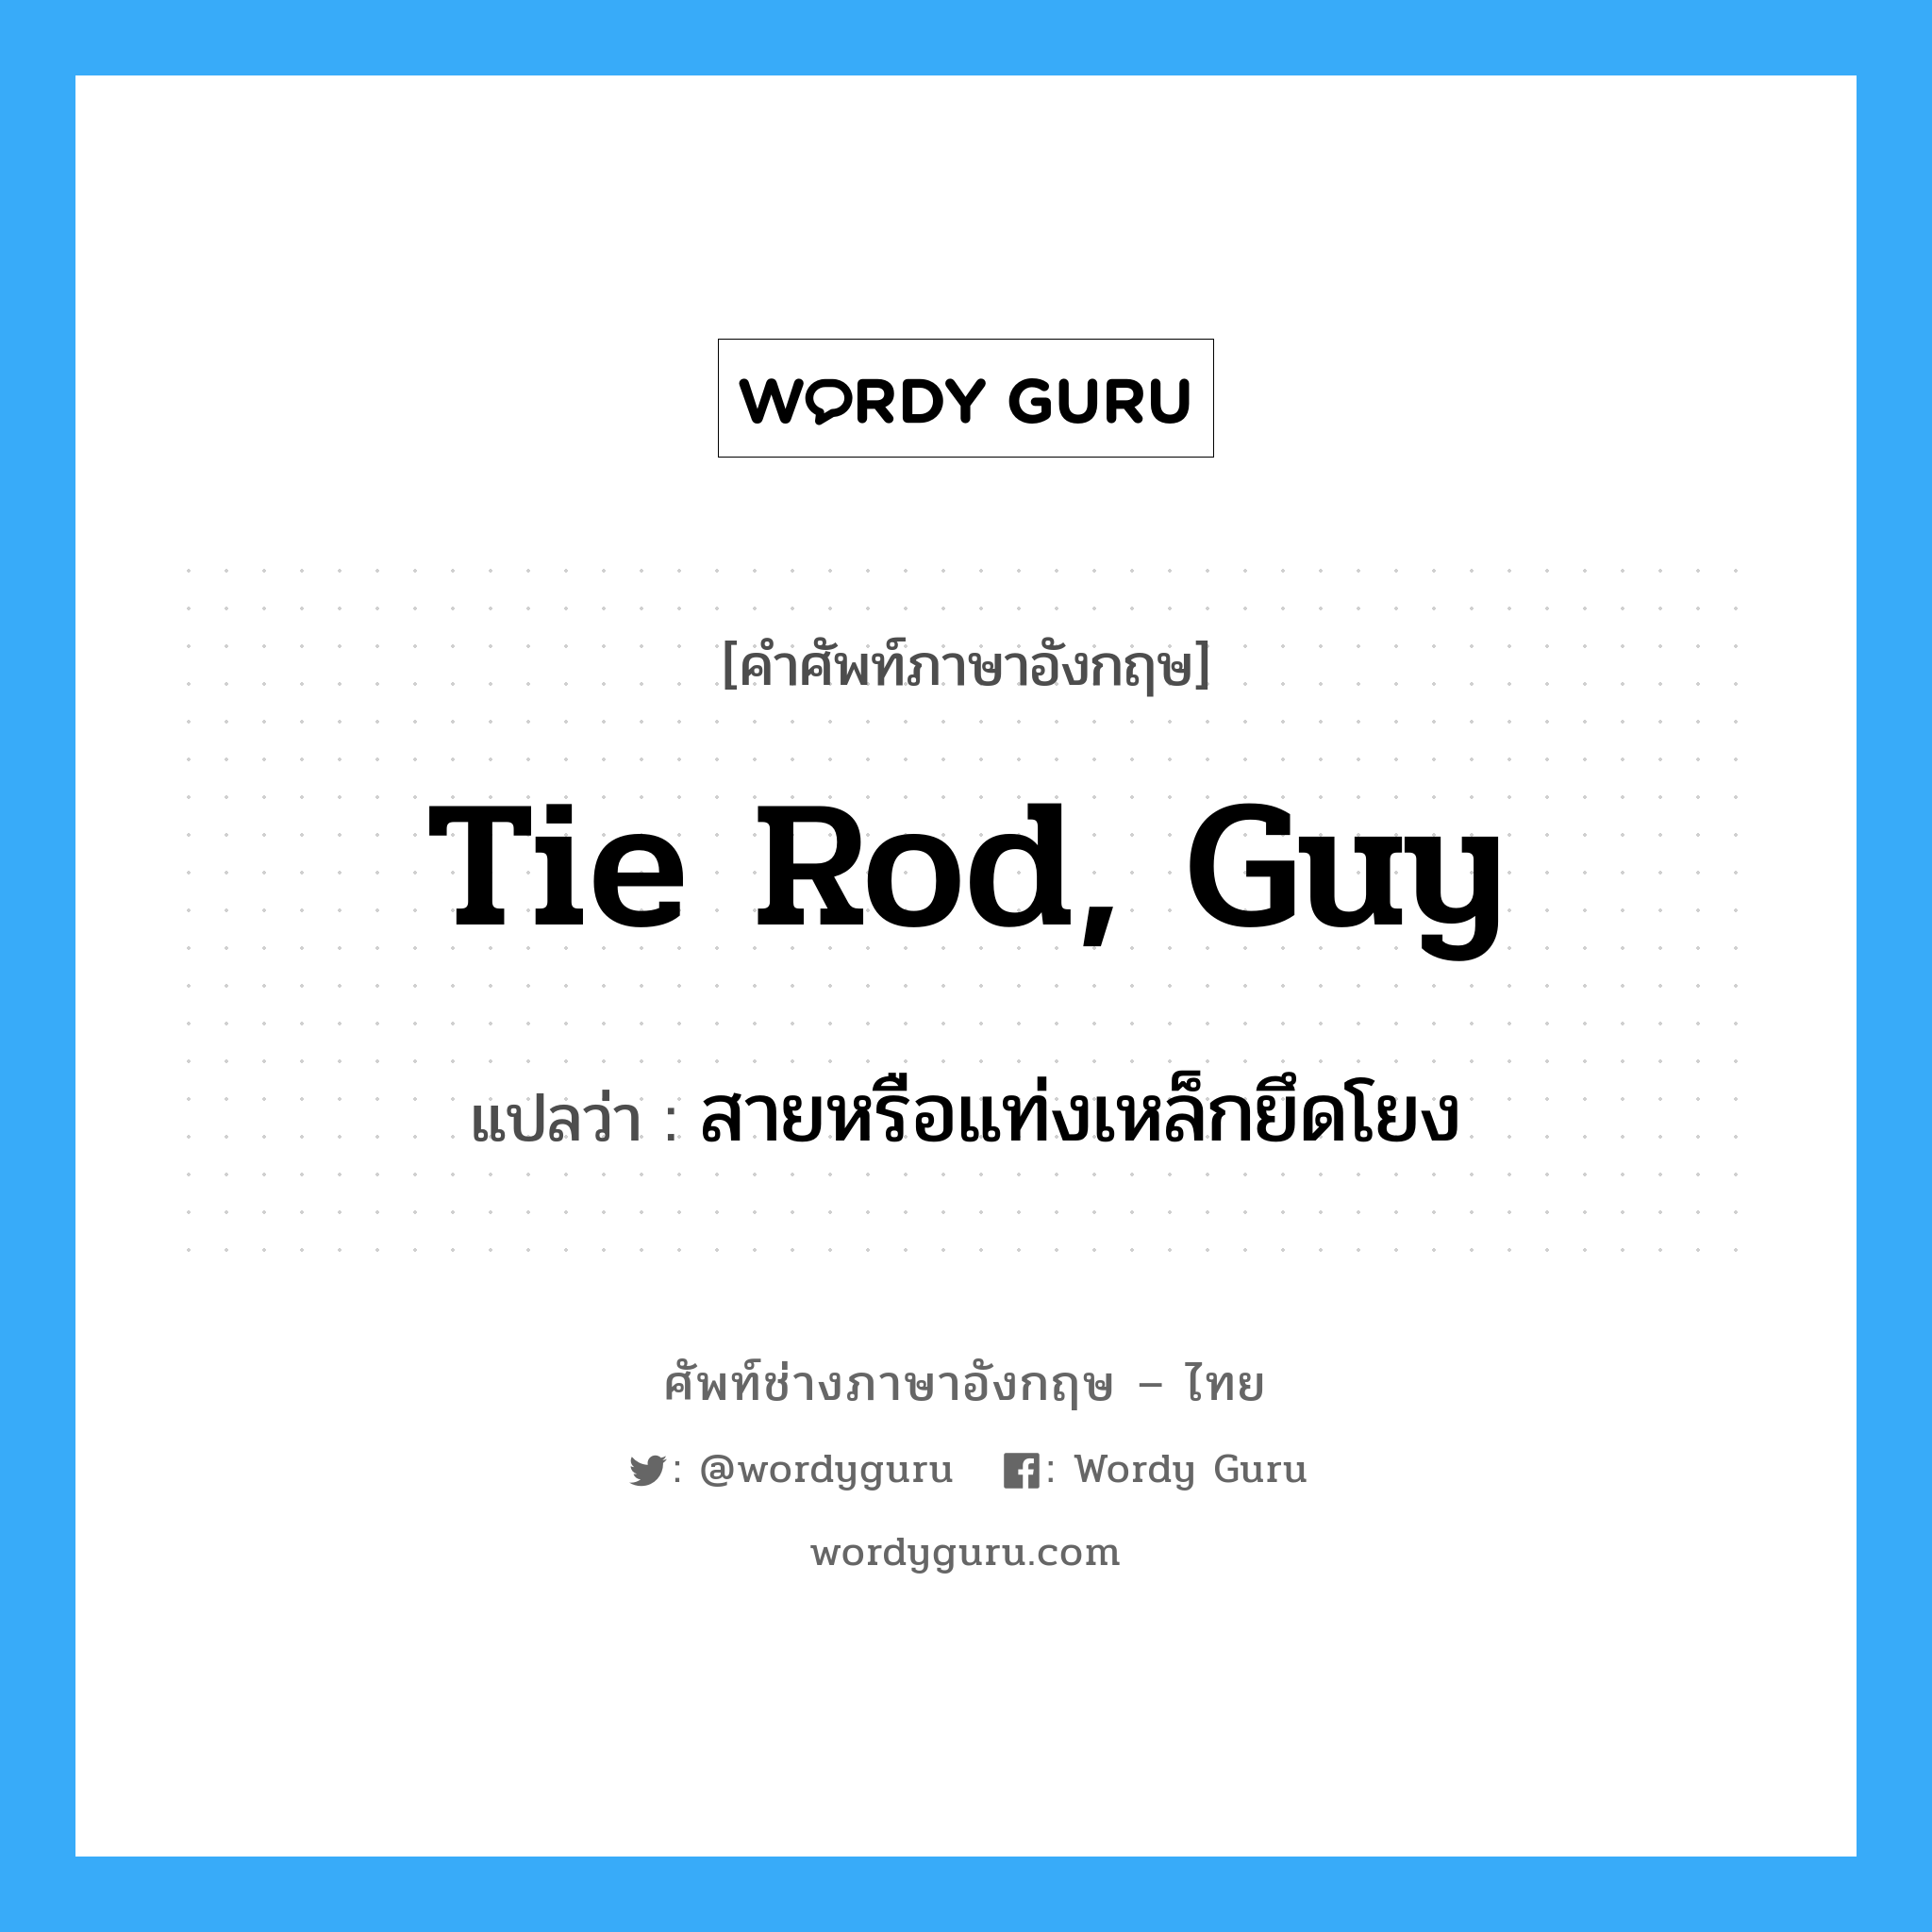 tie rod, guy แปลว่า?, คำศัพท์ช่างภาษาอังกฤษ - ไทย tie rod, guy คำศัพท์ภาษาอังกฤษ tie rod, guy แปลว่า สายหรือแท่งเหล็กยึดโยง